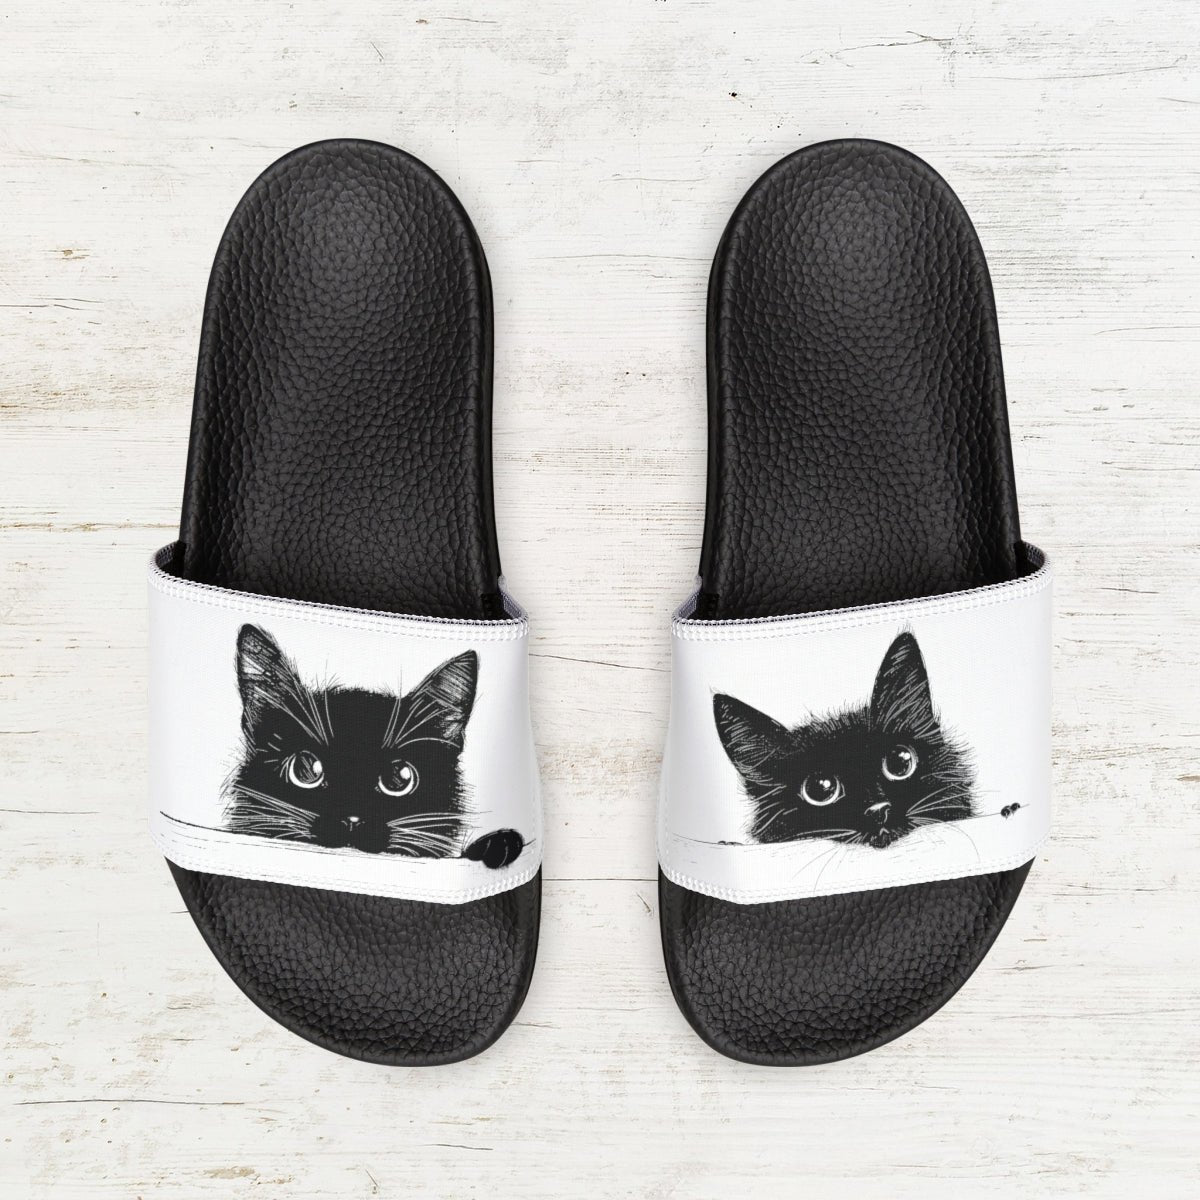 Double Cute Black Cat Art Slide Sandals, Women & Girls Two Black Cat Slip-on Shoes - FlooredByArt